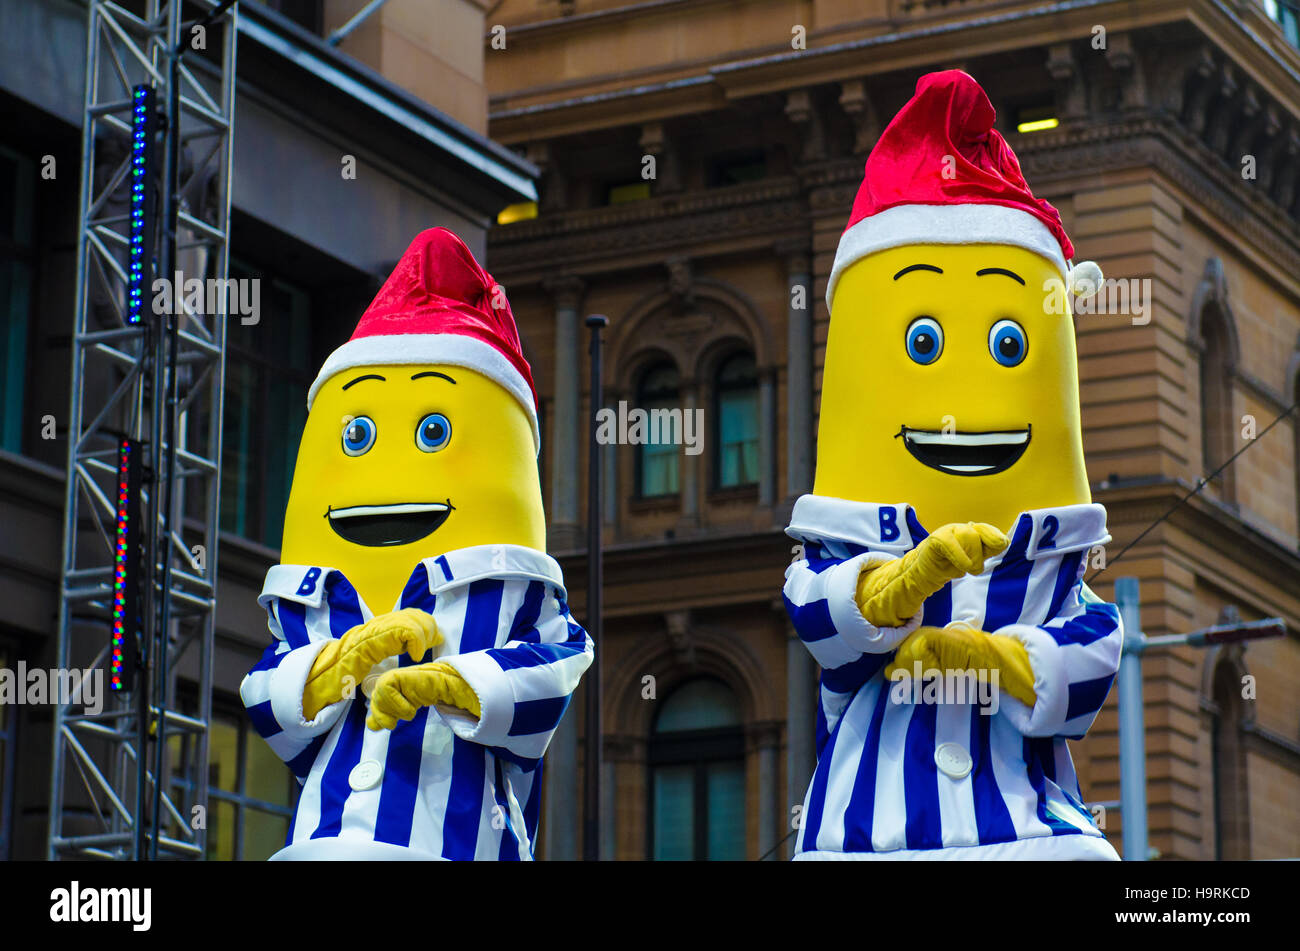 Banane in pigiama immagini e fotografie stock ad alta risoluzione - Alamy